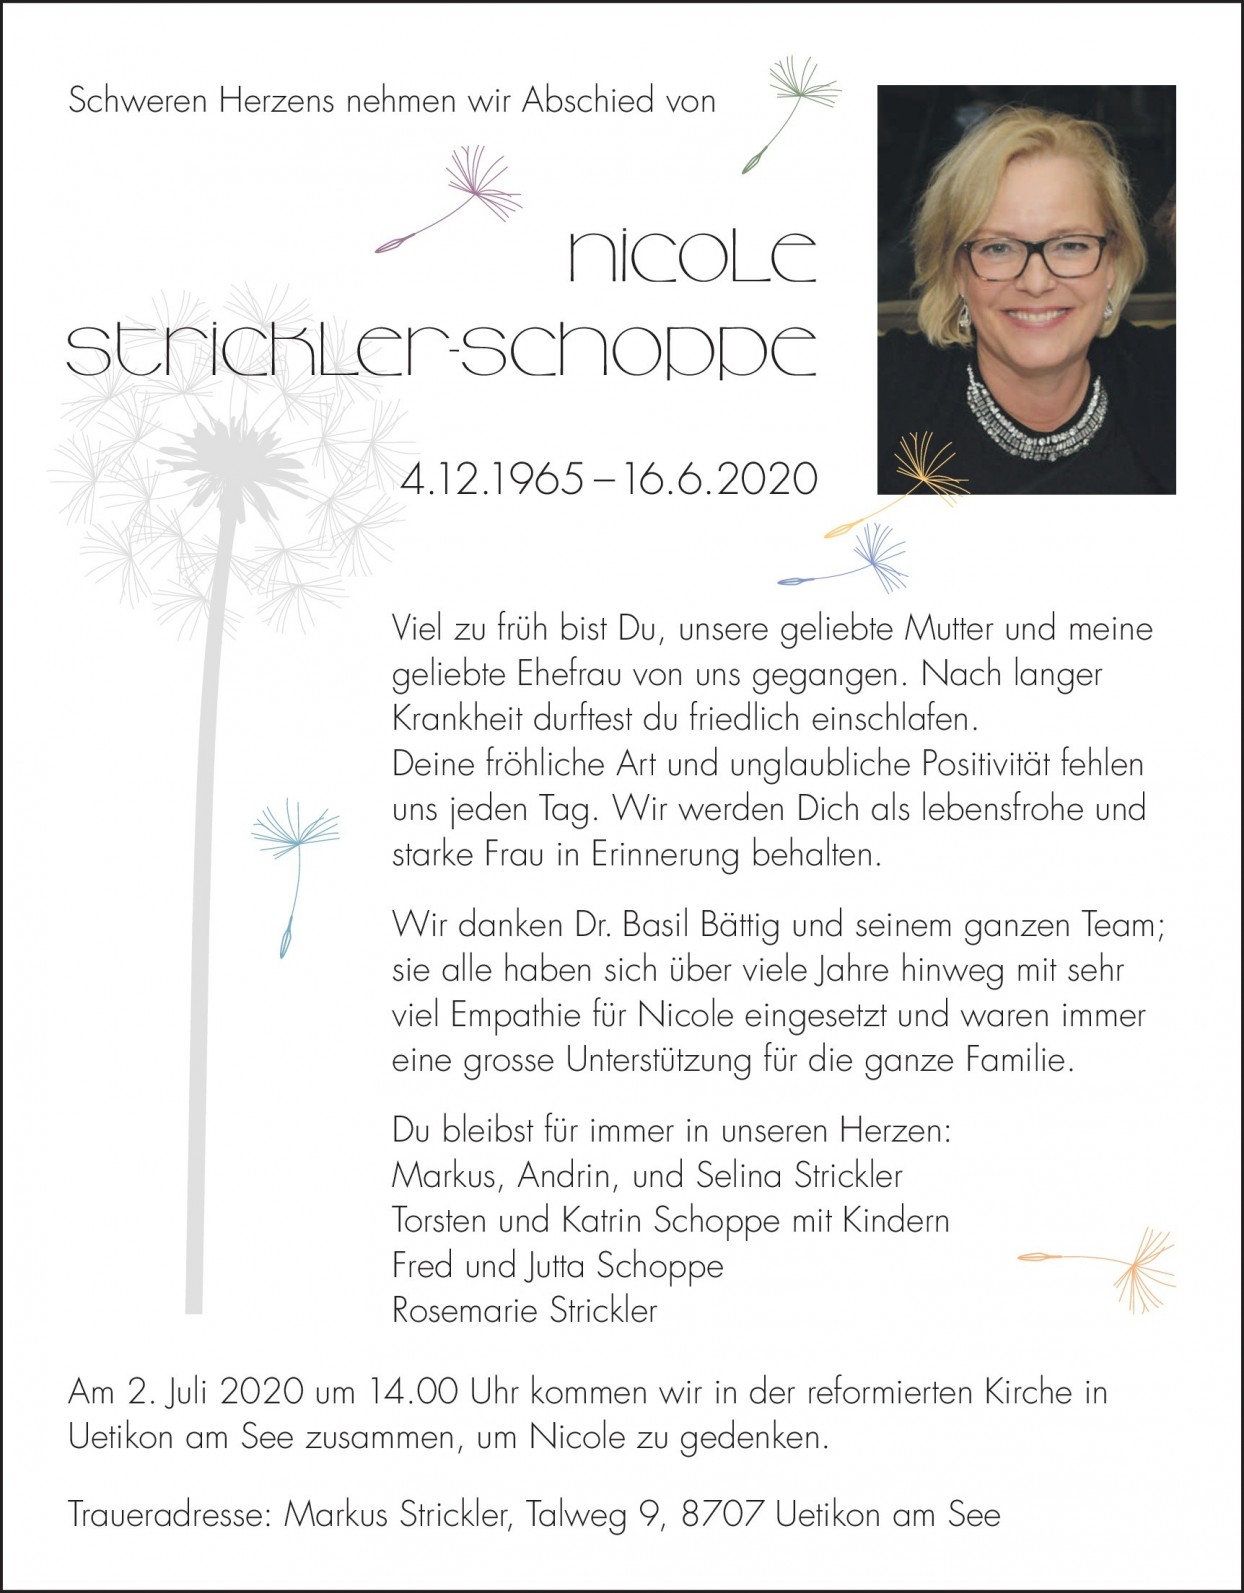 Nicole Strickler-Schoppe